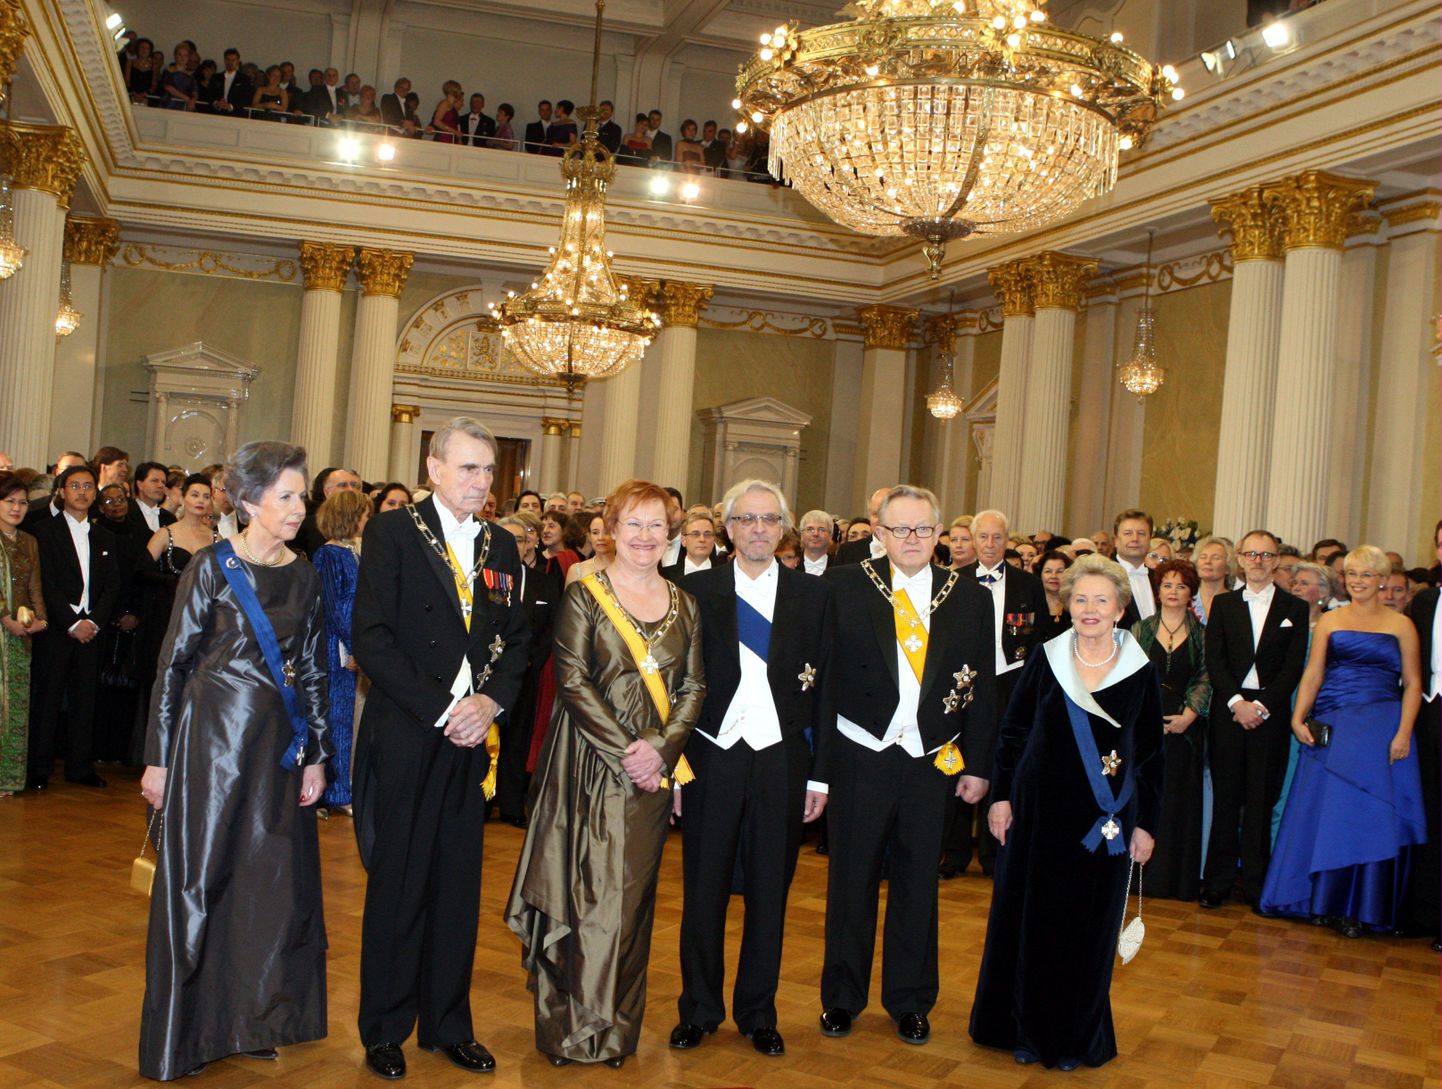 Soome iseseisvuspäeva vastuvõtt, kui Soome president oli veel Tarja Halonen(keskel)